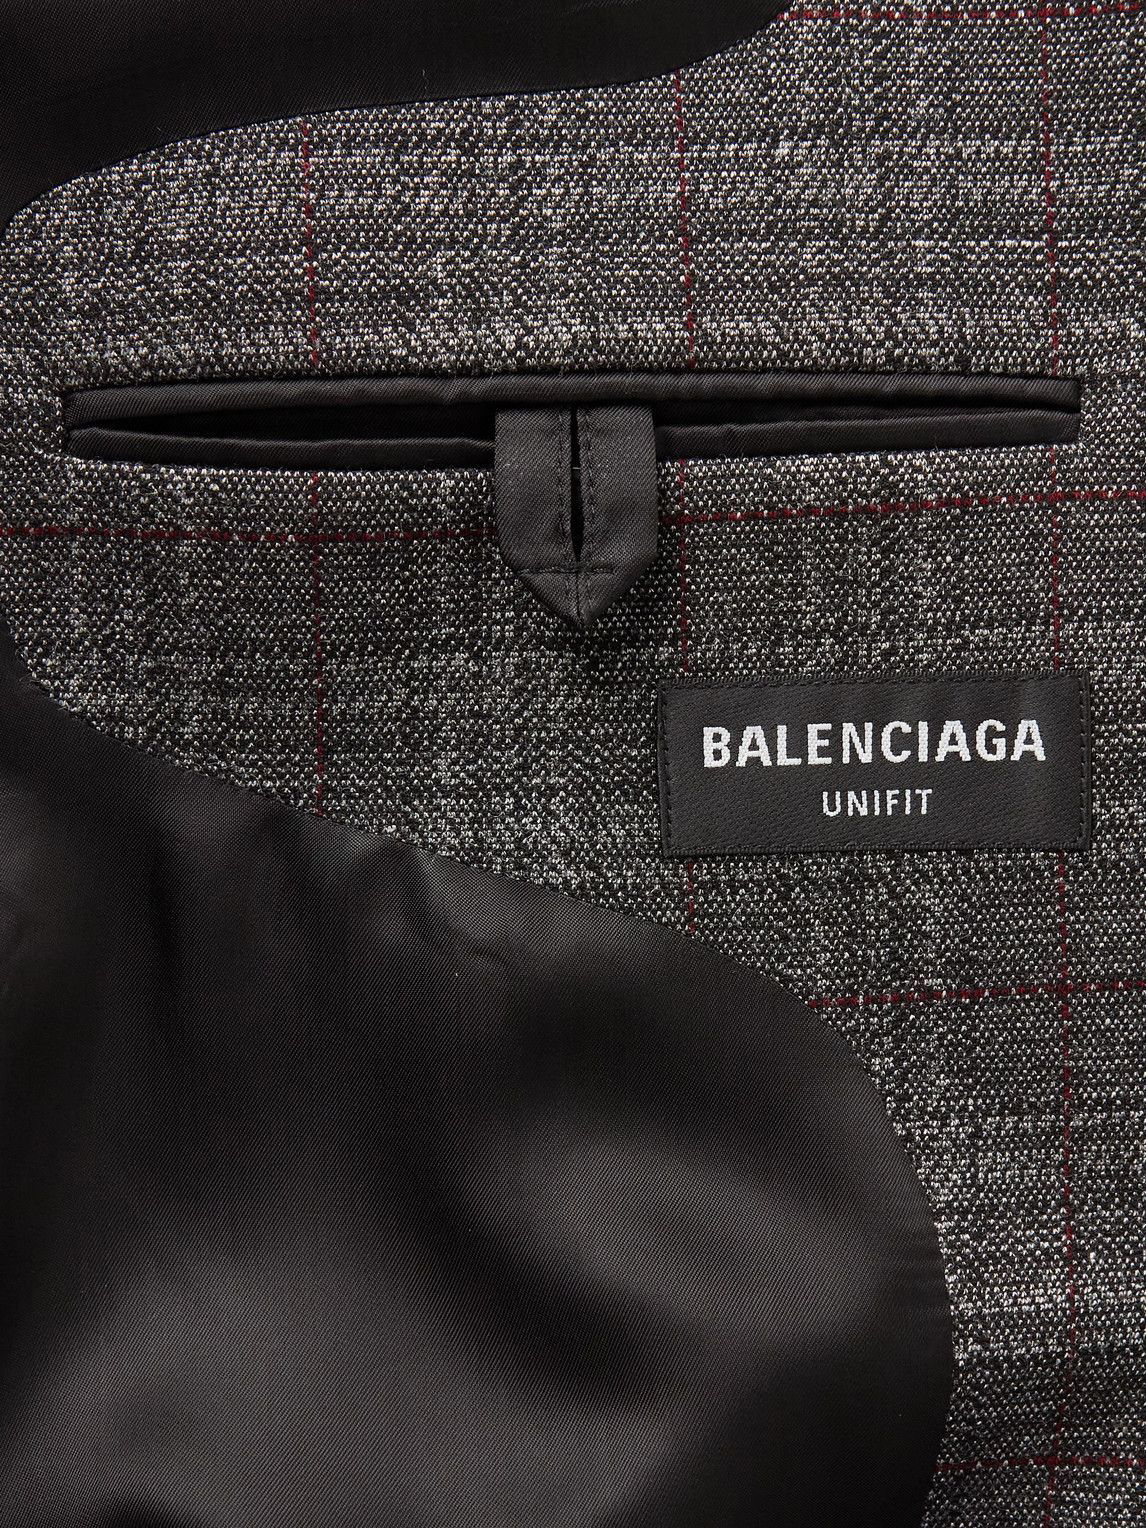 SALVATORE FERRAGAMO - Black & Silver Distressed Oversized Leather